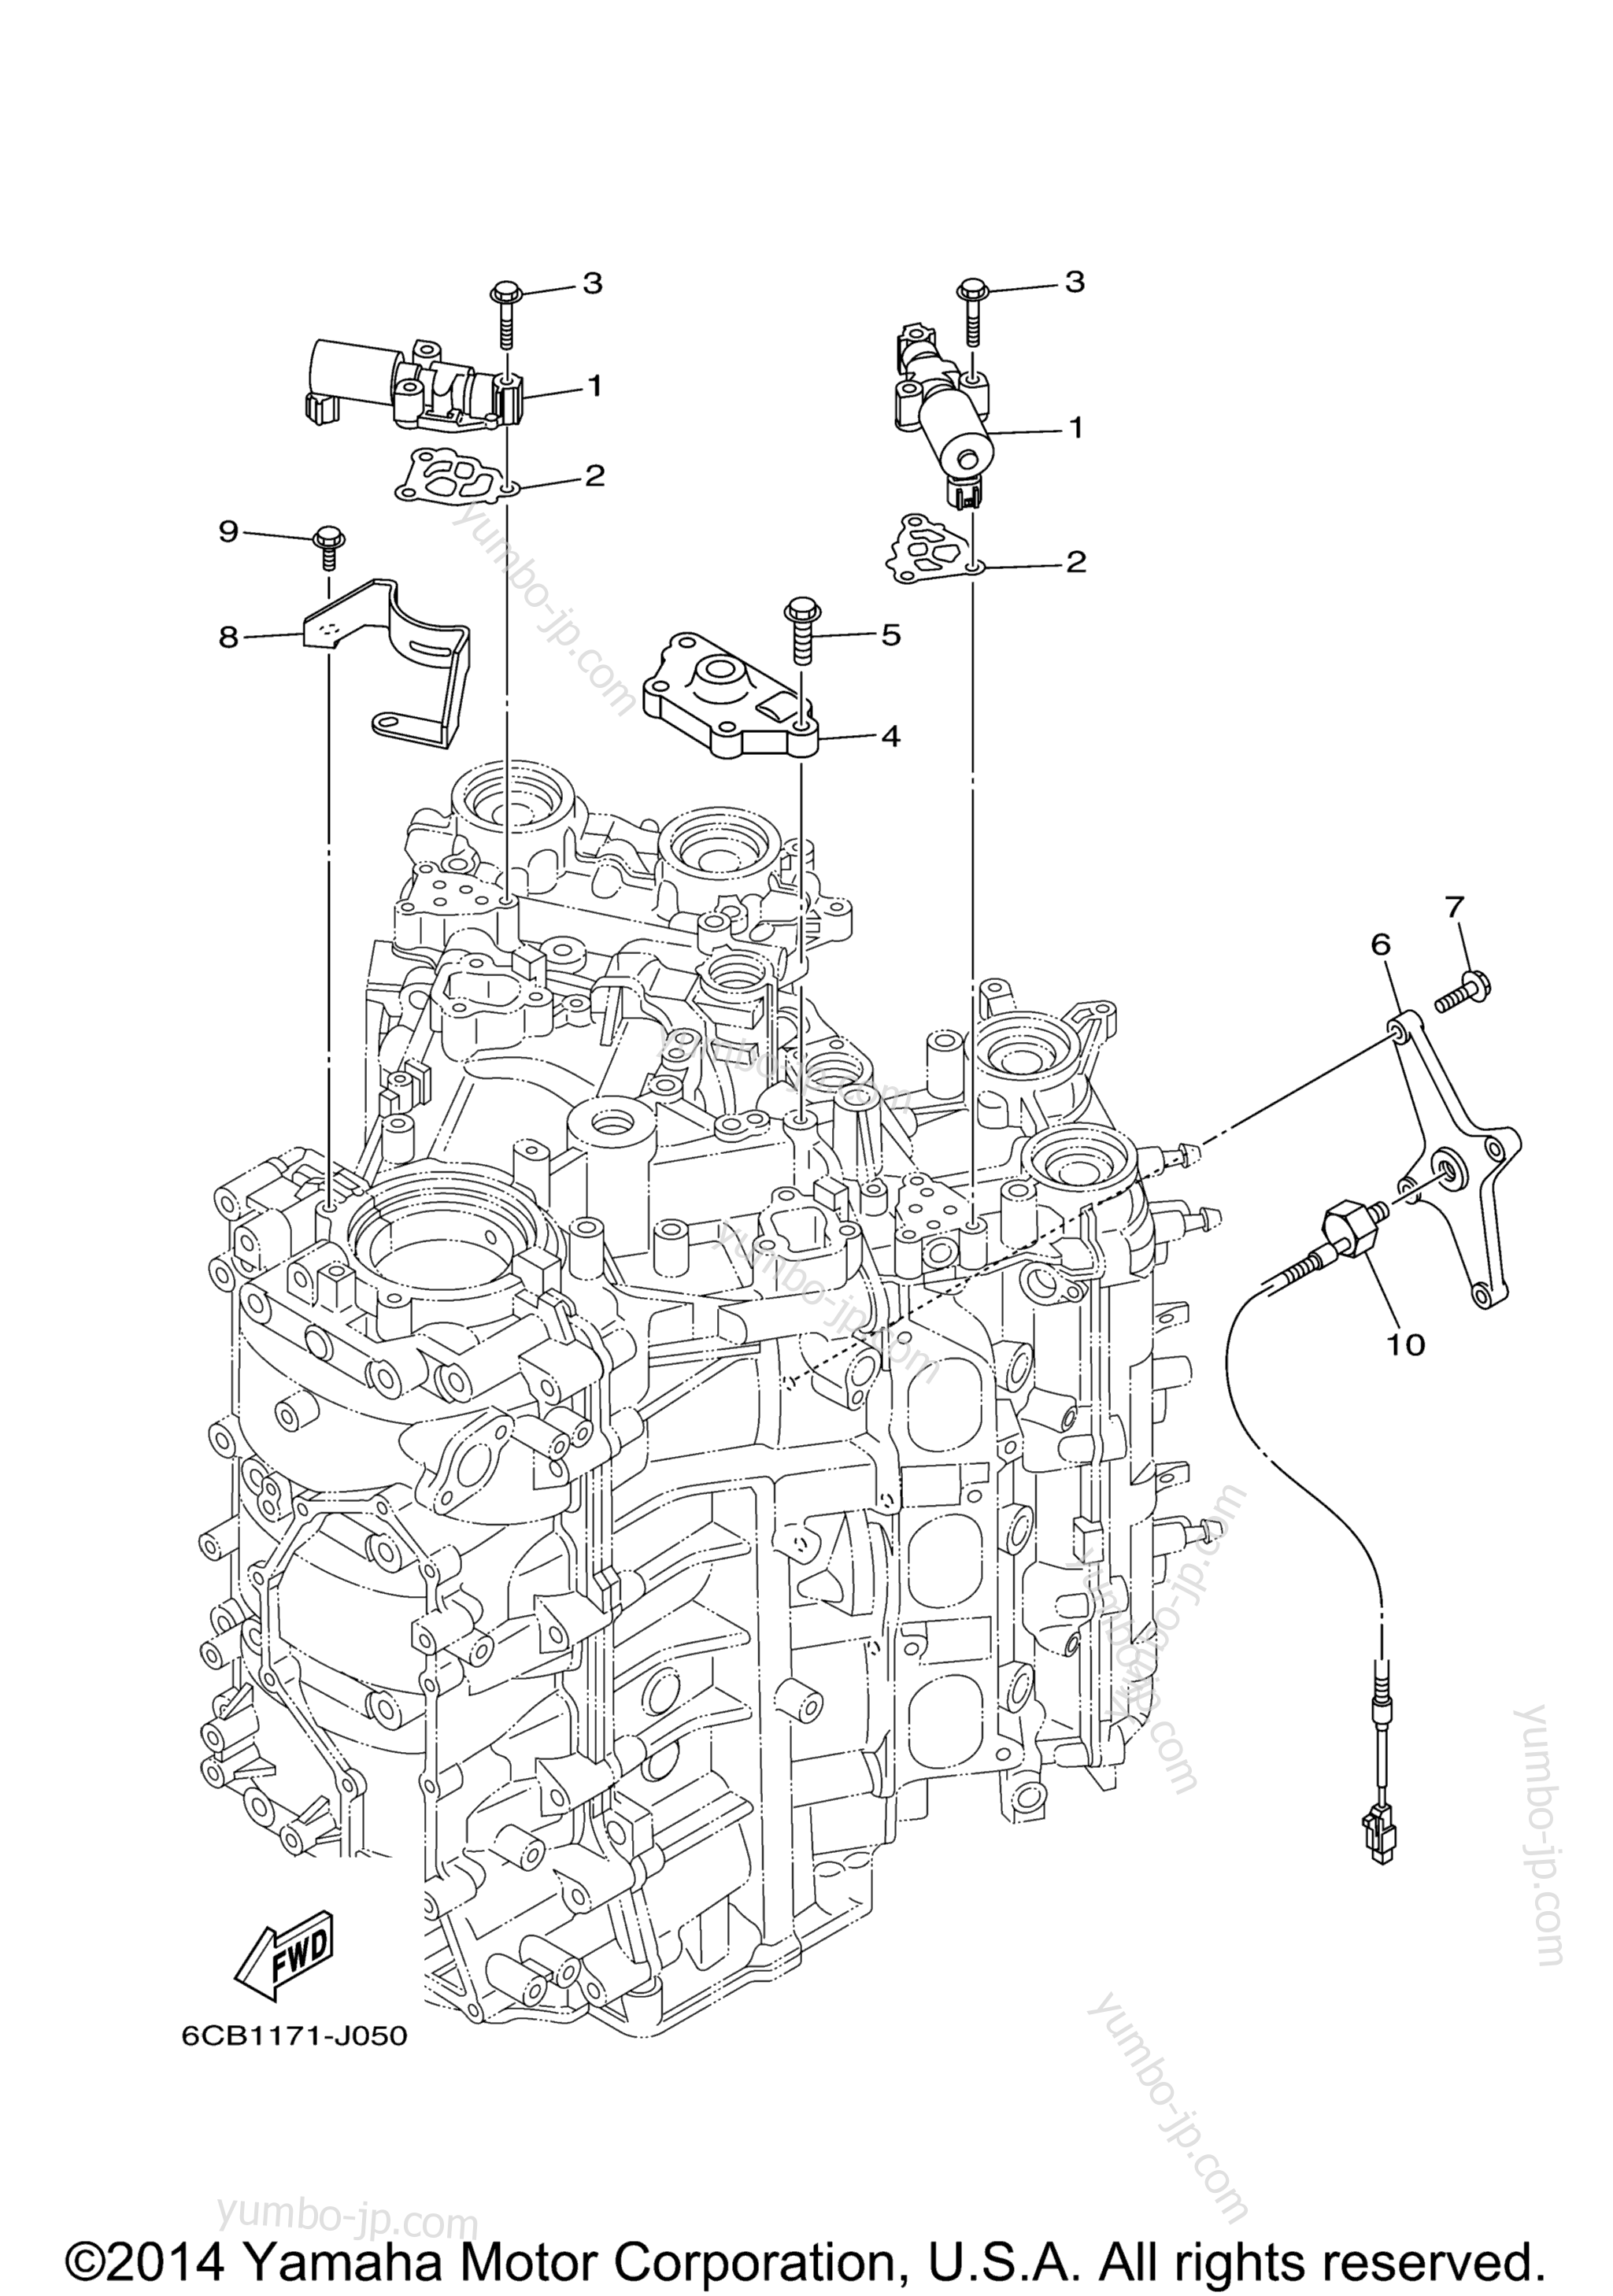 Cylinder Crankcase 3 для лодочных моторов YAMAHA LF300XCA_0 (0112) 2006 г.